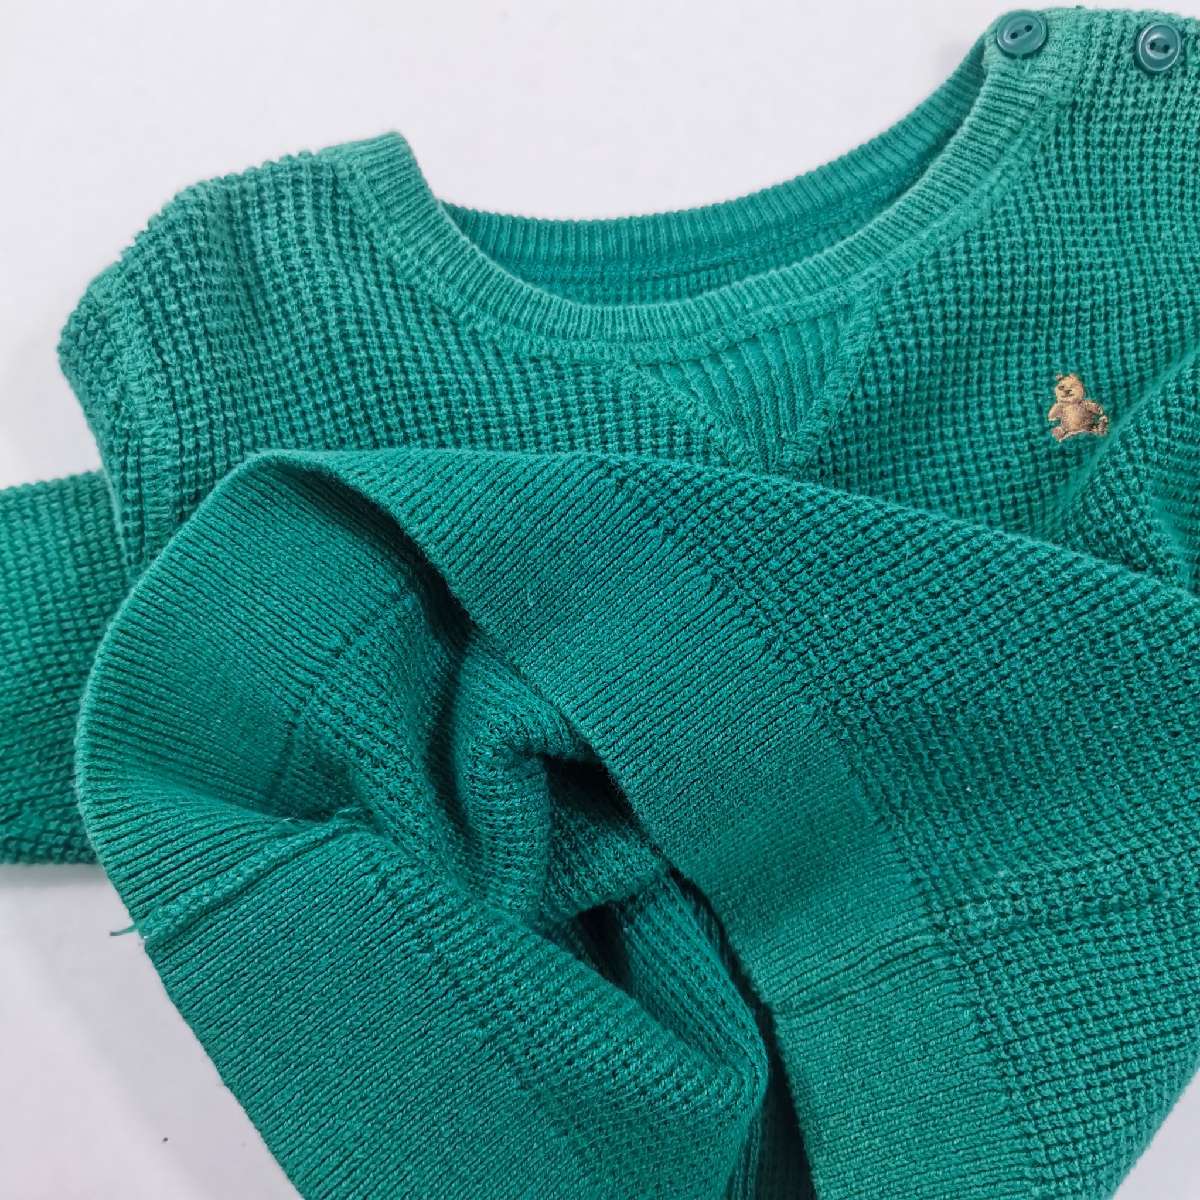 เสื้อกันหนาวไหมพรม baby GAP size 12 -18 months สีเขียว